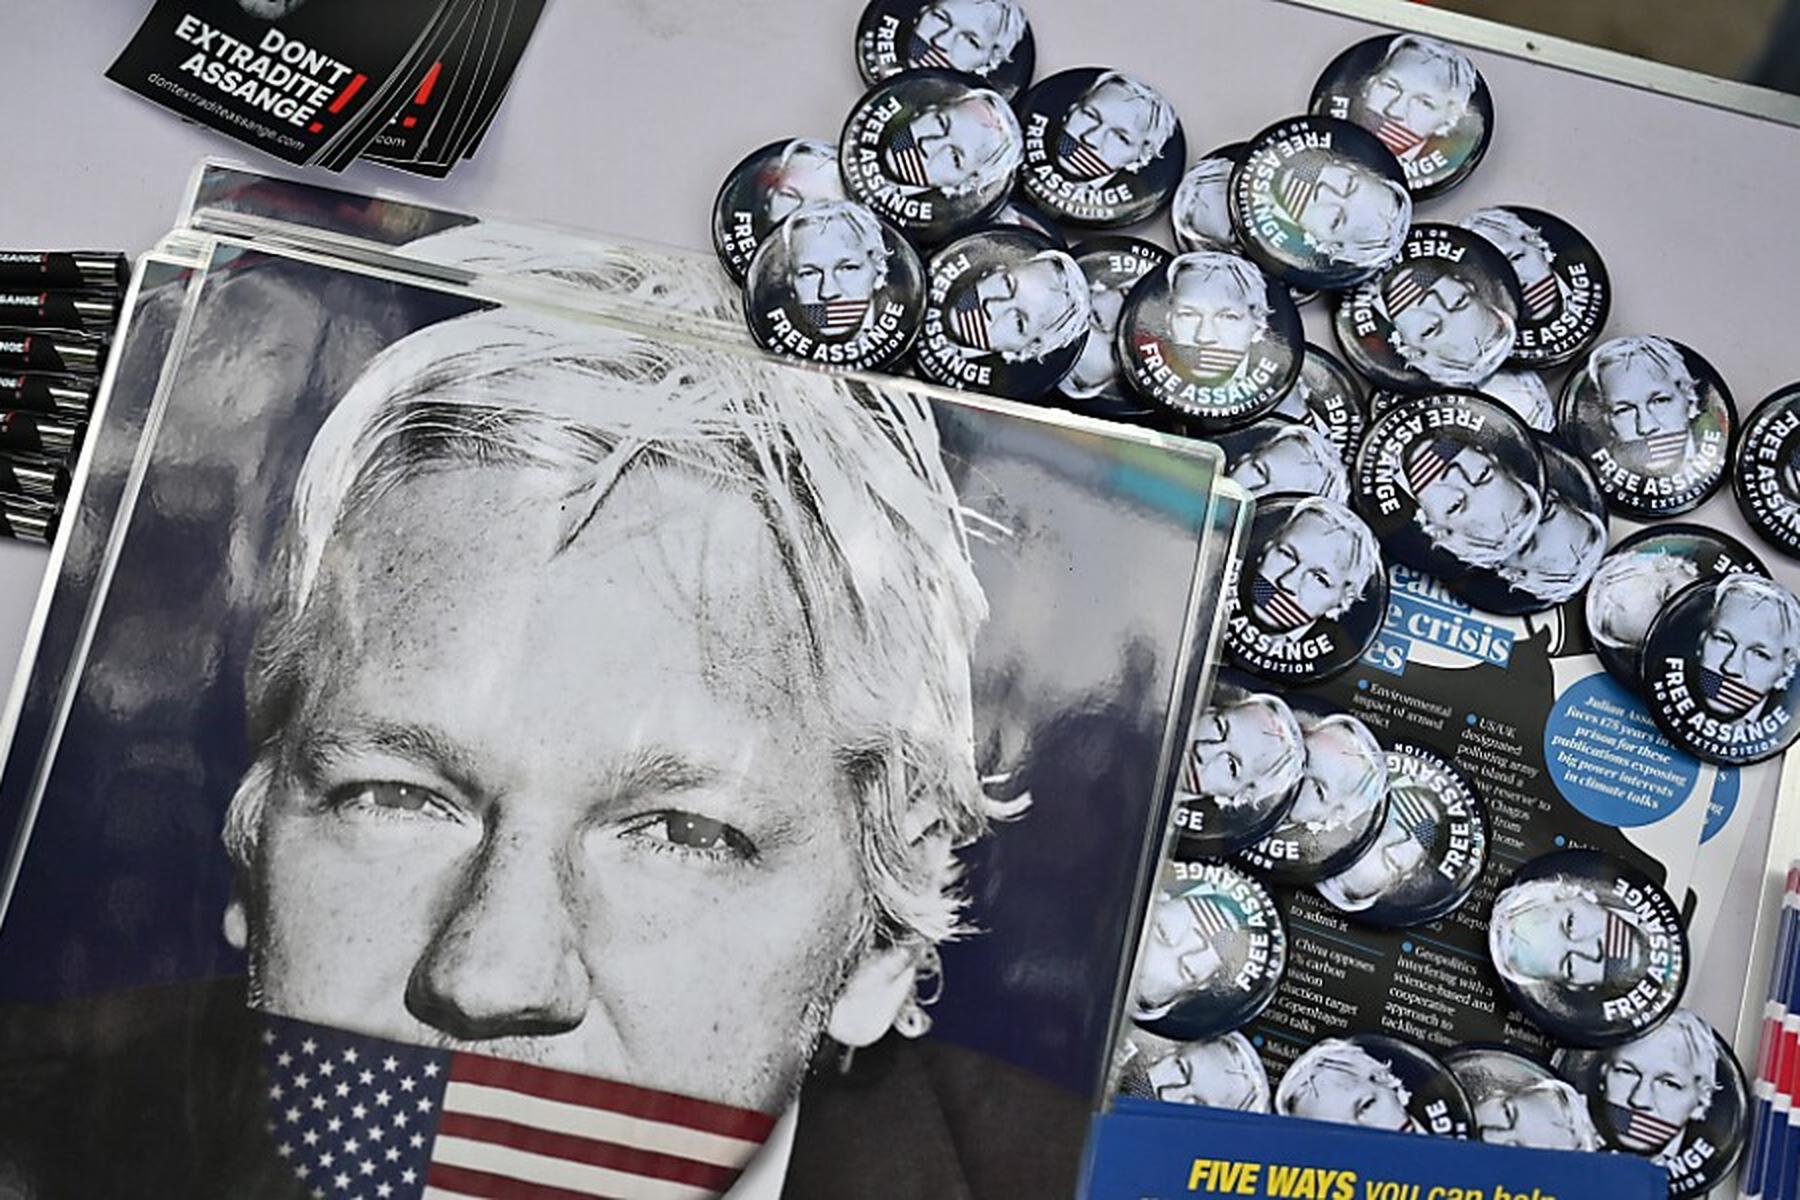 London: Berufungsgericht verhandelt über Auslieferung von Assange